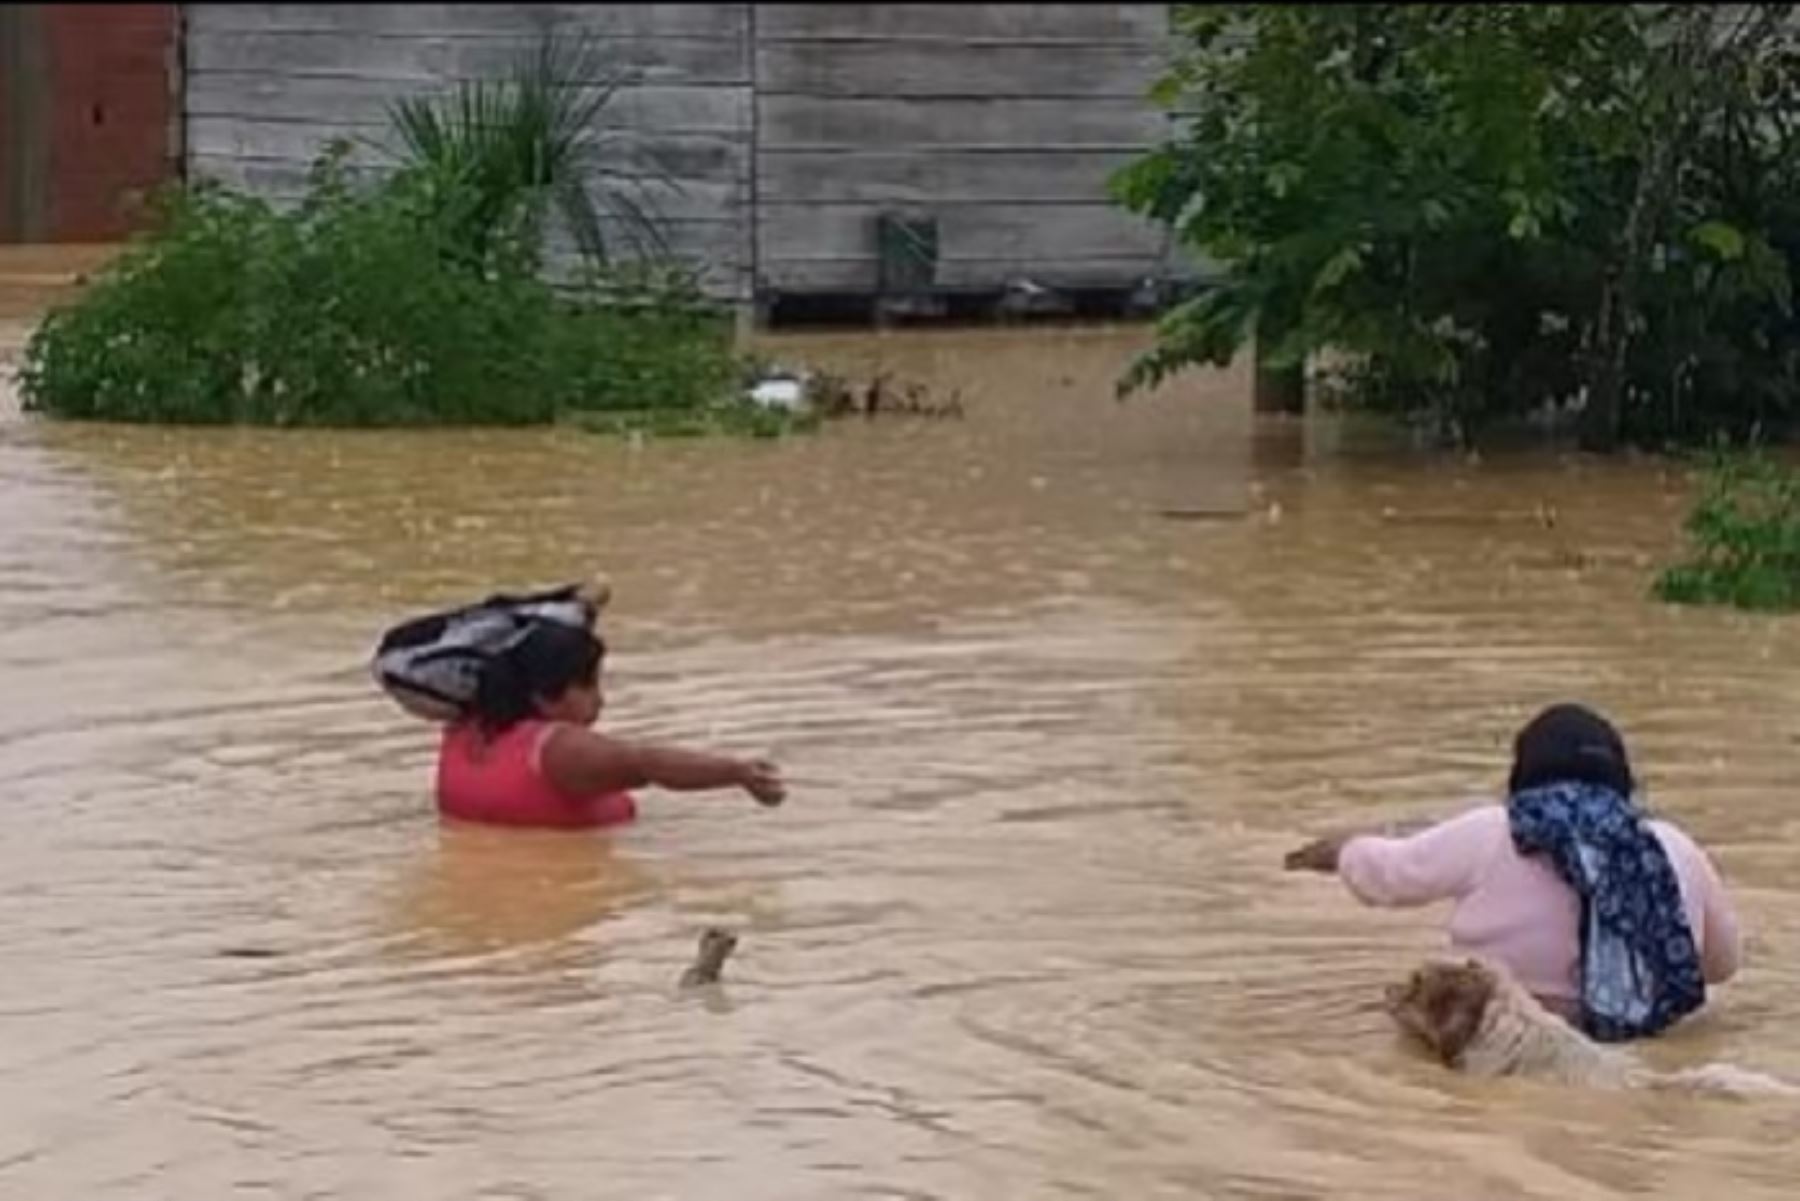 Los desbordes de varias quebradas ocasionaron una inundación que ha dejado hasta el momento 150 familias afectadas en el Sector Virgen de la Candelaria (altura del kilómetro 322 de la vía interoceánica Urcos-Iñapari), distrito de Inambari, provincia Tambopata, en la región Madre de Dios.